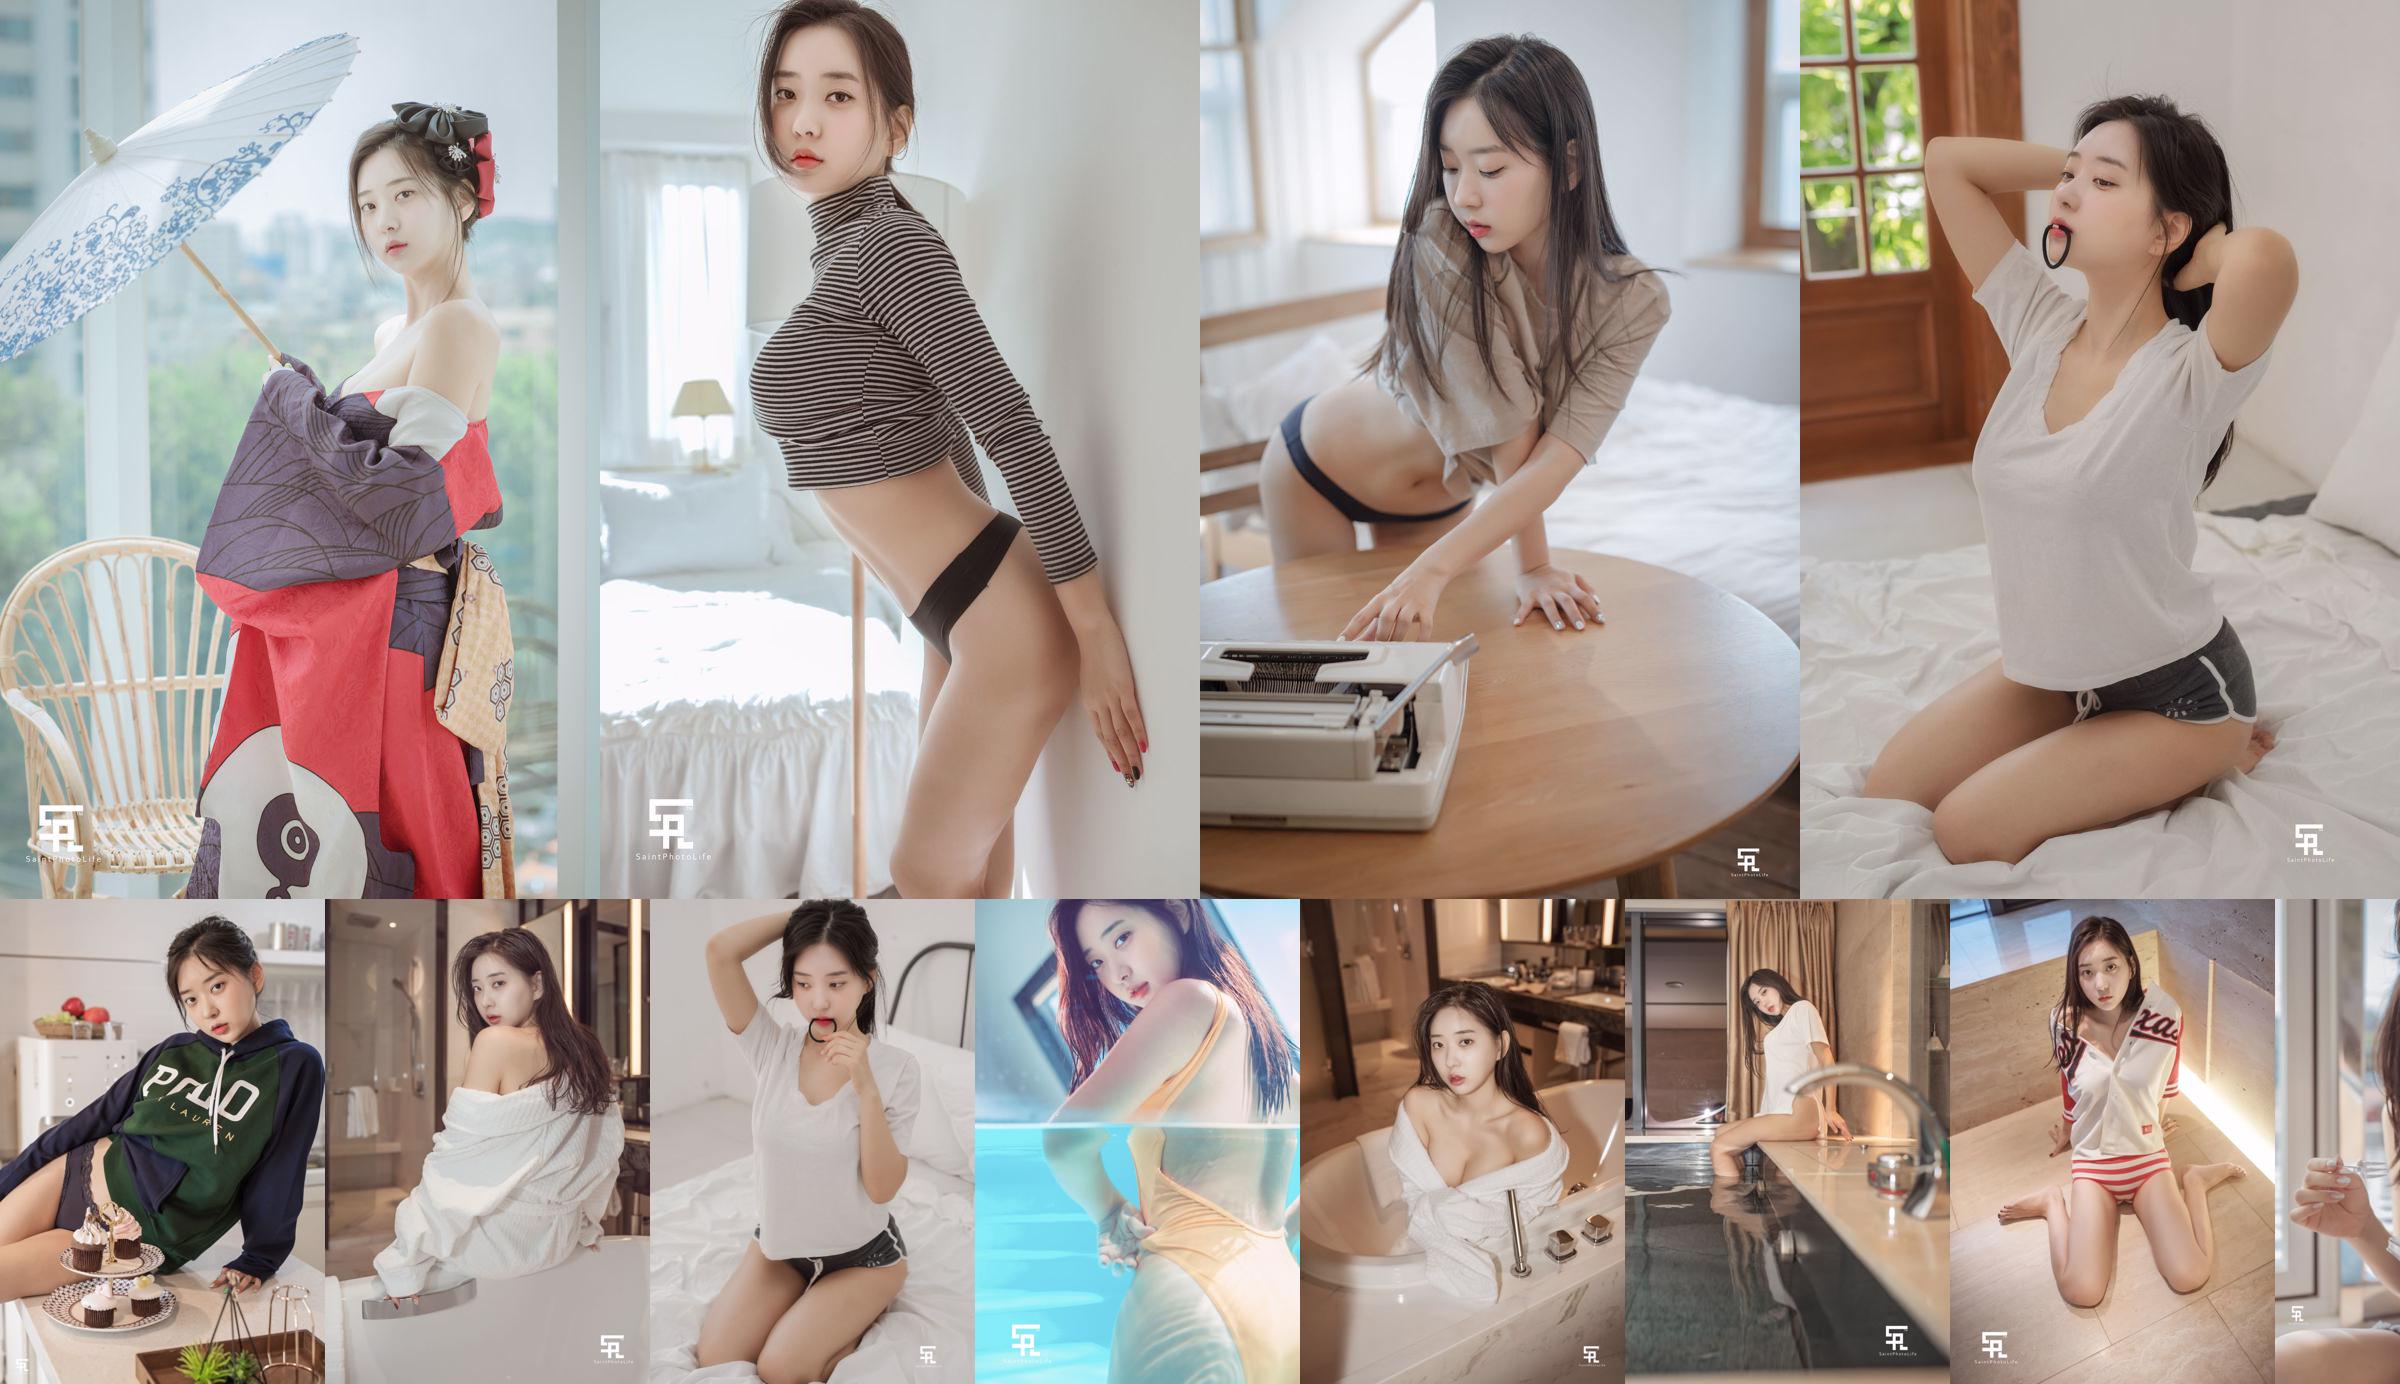 [saintphotolife] - Chica coreana Zenny foto 2019 verano parte 1 No.1c7cf5 Página 1